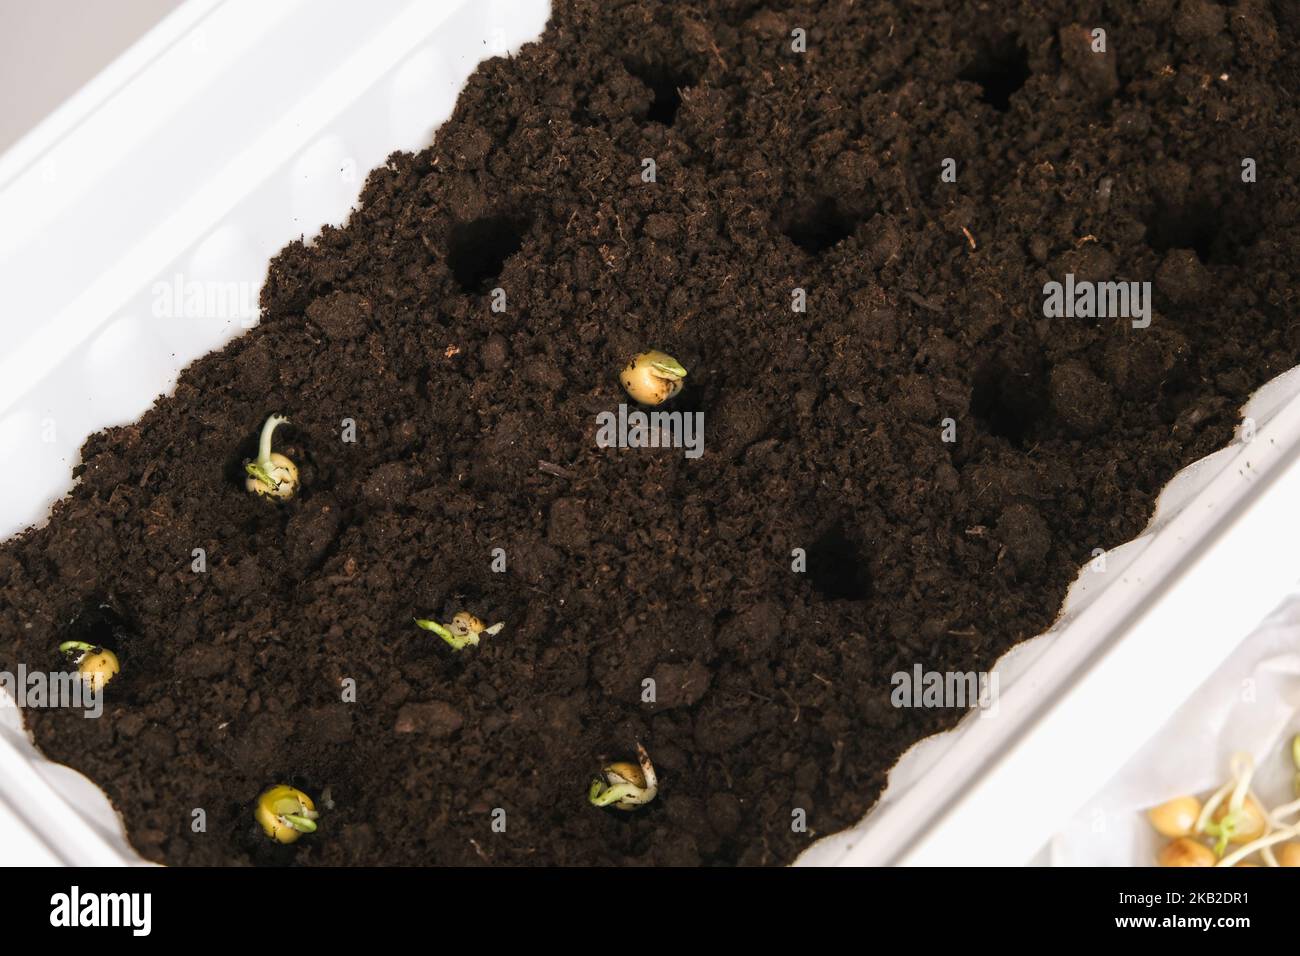 Un uomo pianta germogli di piselli in buchi nella terra, suolo. Preparazione di piantine nella scatola di balcone. Coltivando microgreens, piselli dolci a casa in un appartamento. Foto Stock